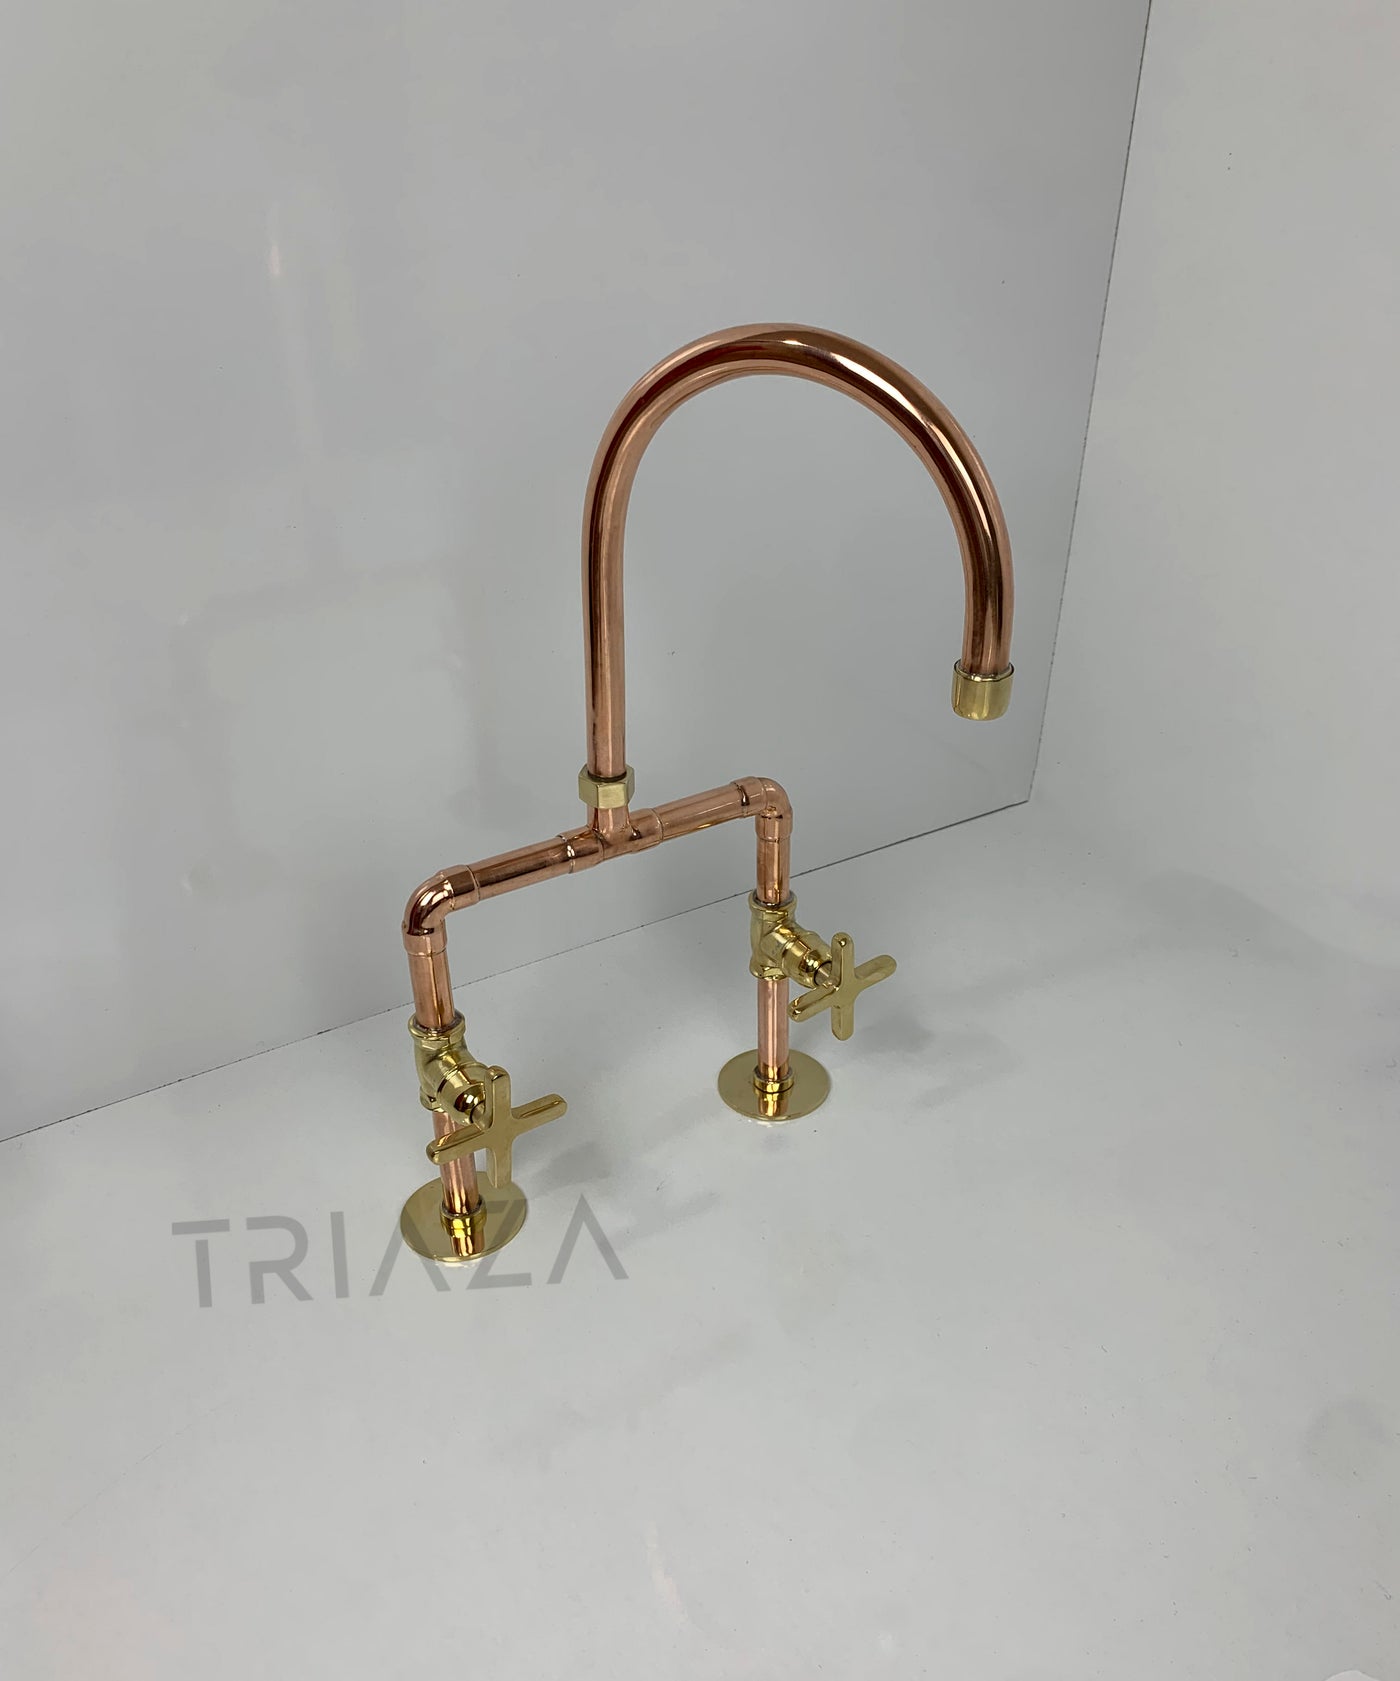 Unlacquered solid copper Bridge faucet , copper faucet , copper kitchen faucet - Triazadesigns